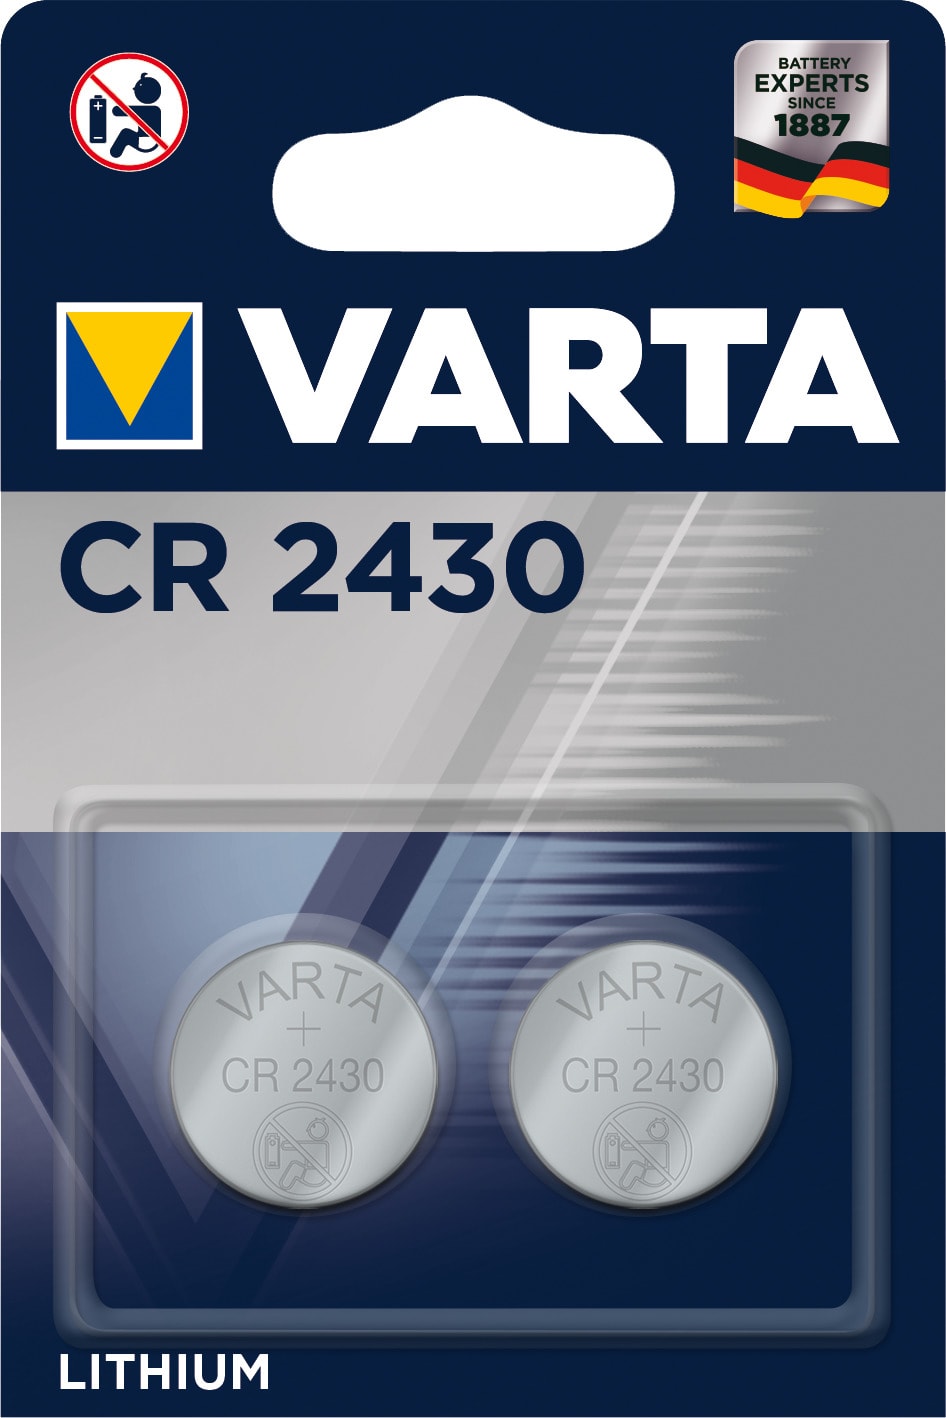 Varta - Pile lithium CR2430 - 3V. Blister x2